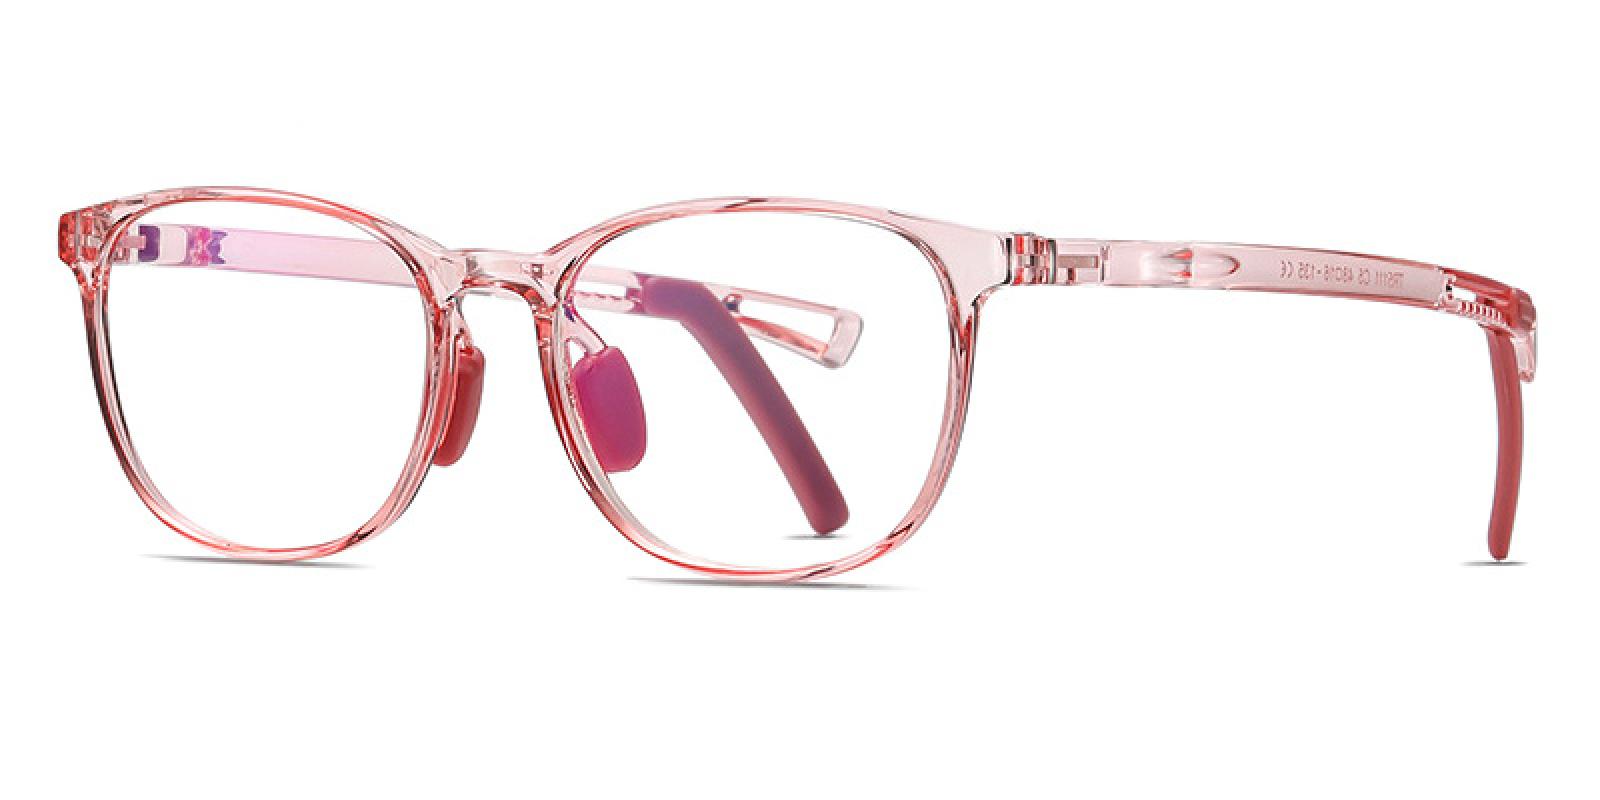 Jetta-Red-Rectangle-TR-Eyeglasses-detail